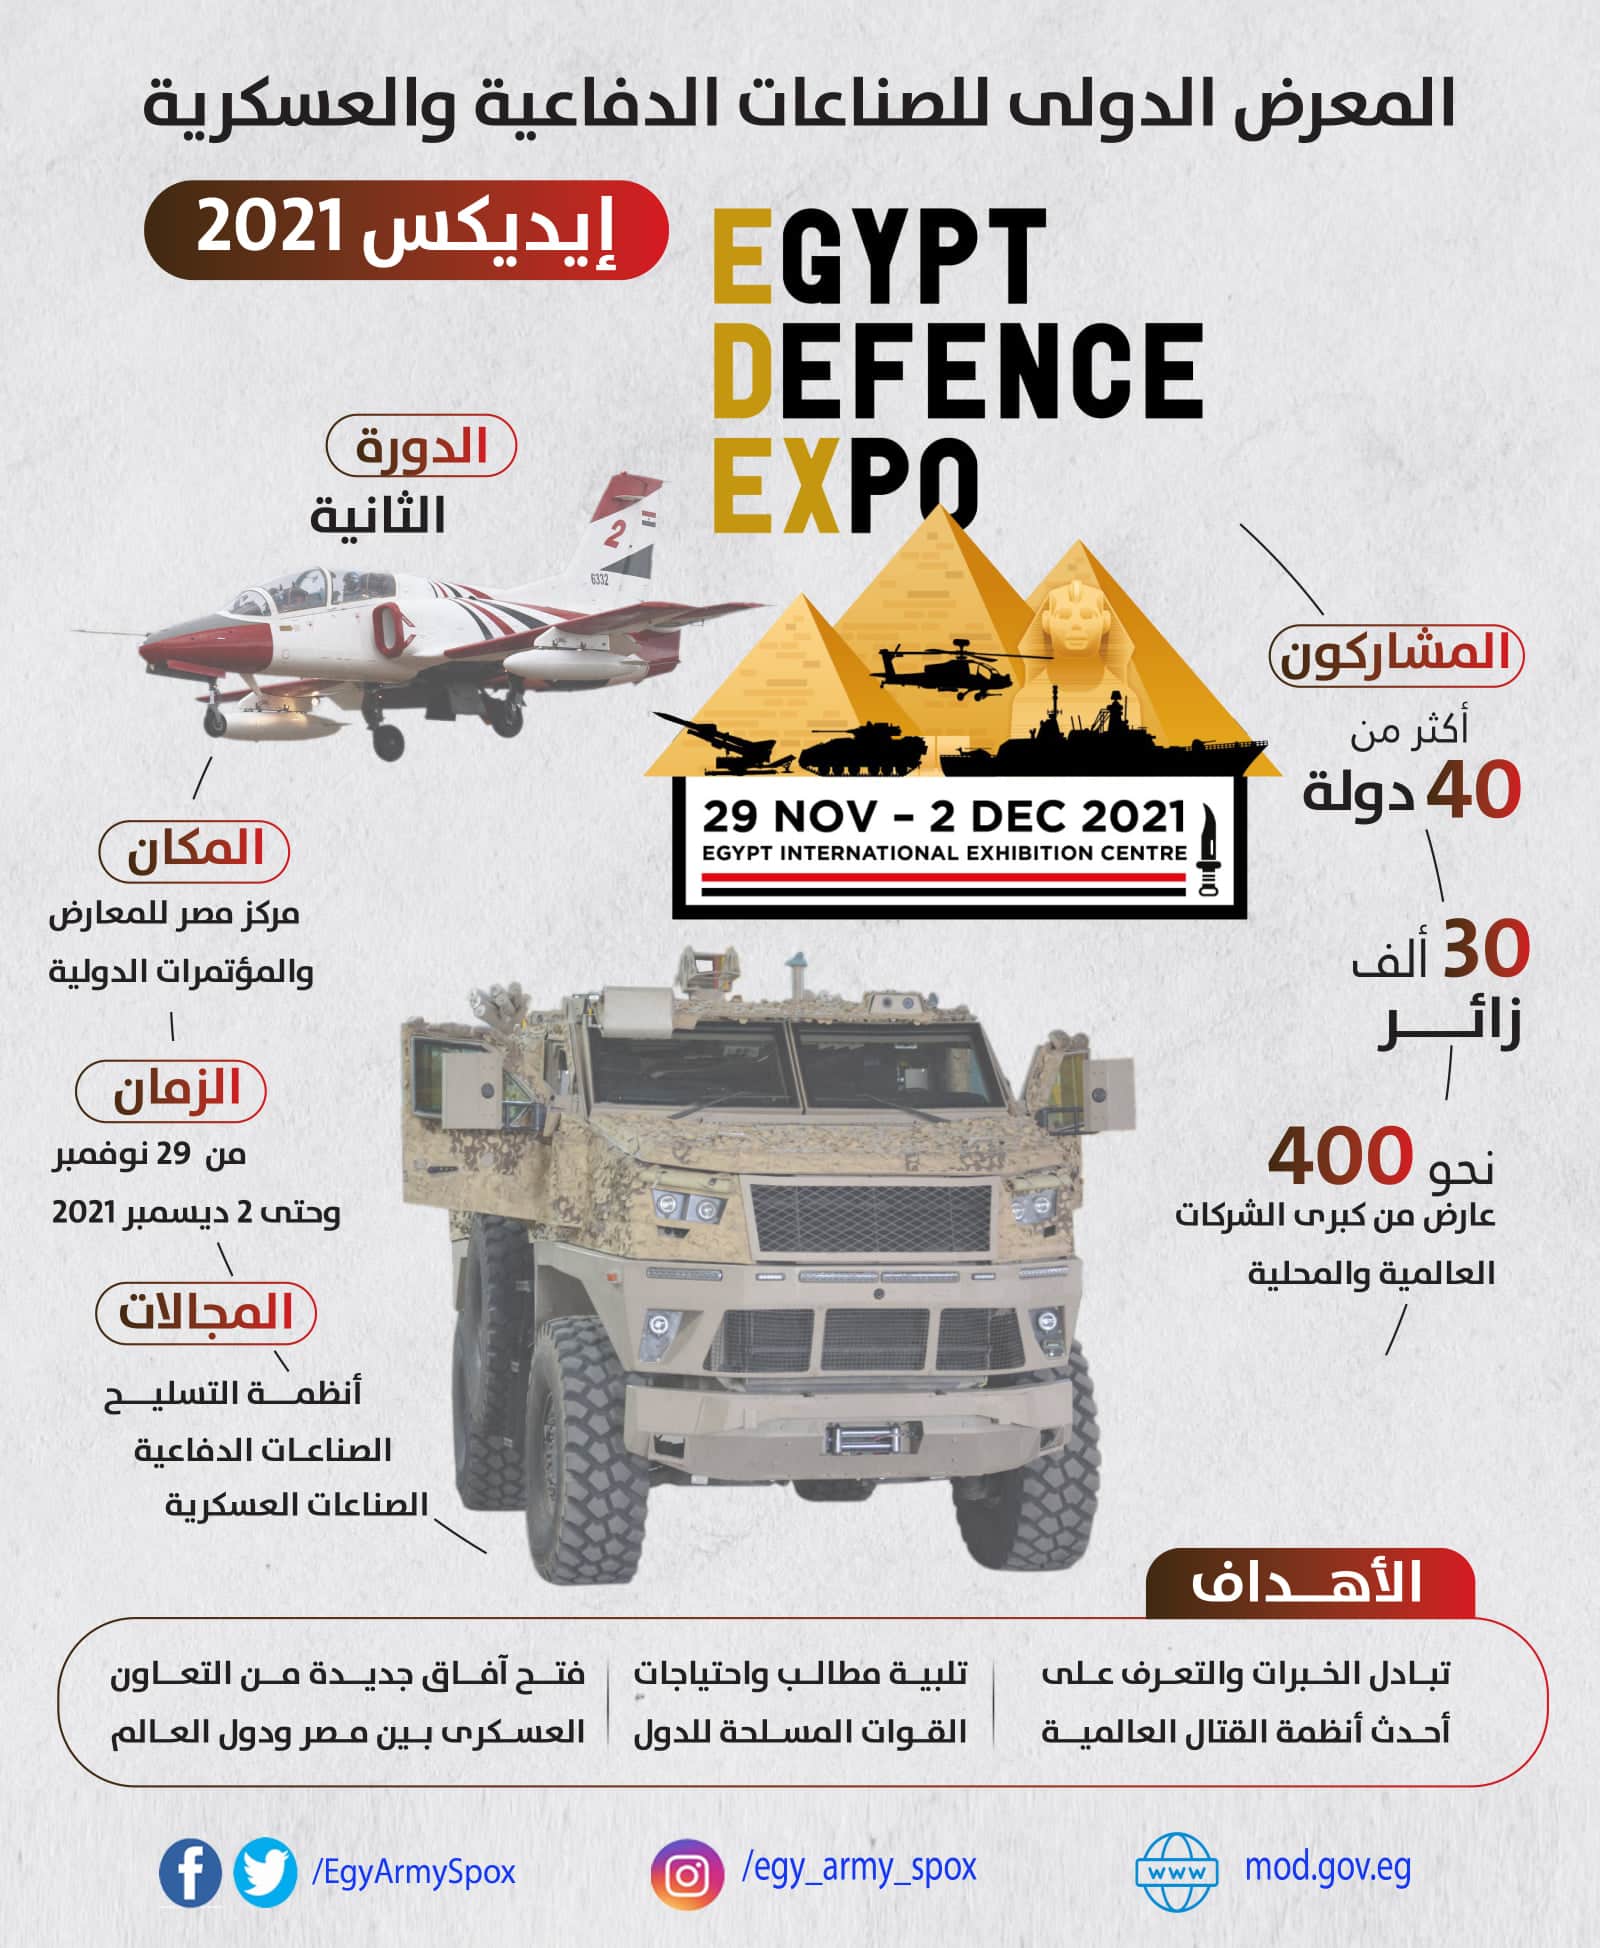 المعرض الدولى للصناعات الدفاعية والعسكرية إيديكس 2021 ينطلق اليوم